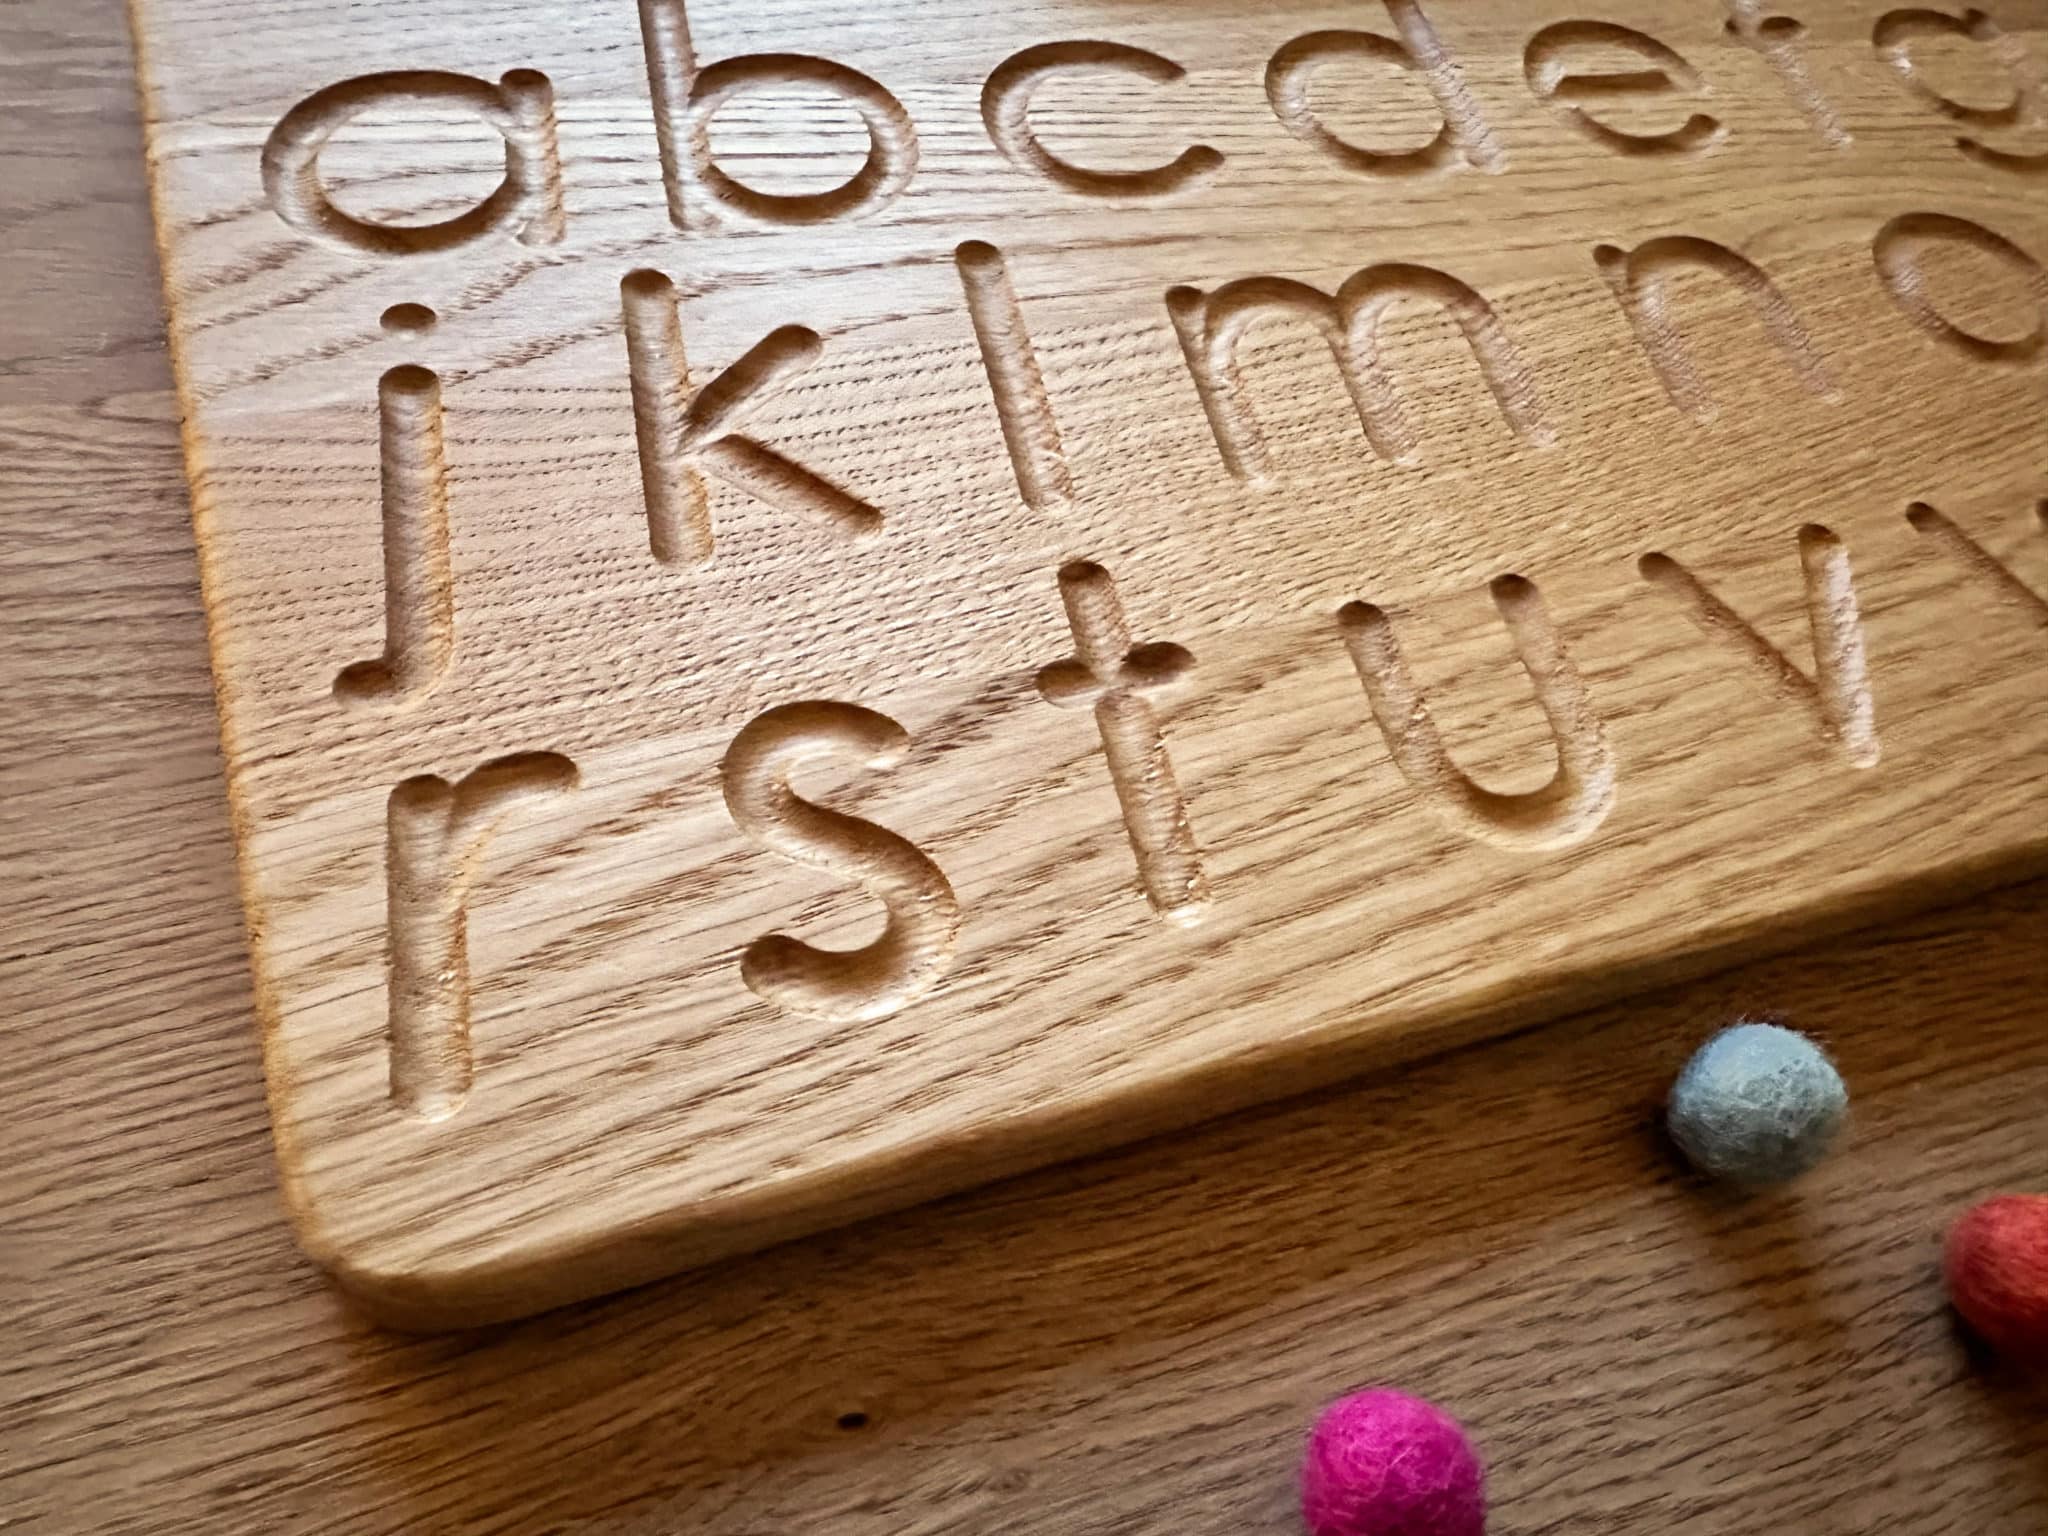 Wooden Tracing Board Montessori Board Montessori Alphabet Wooden Alphabet  Letter Tracing Board Printed/cursive Pack of 2 